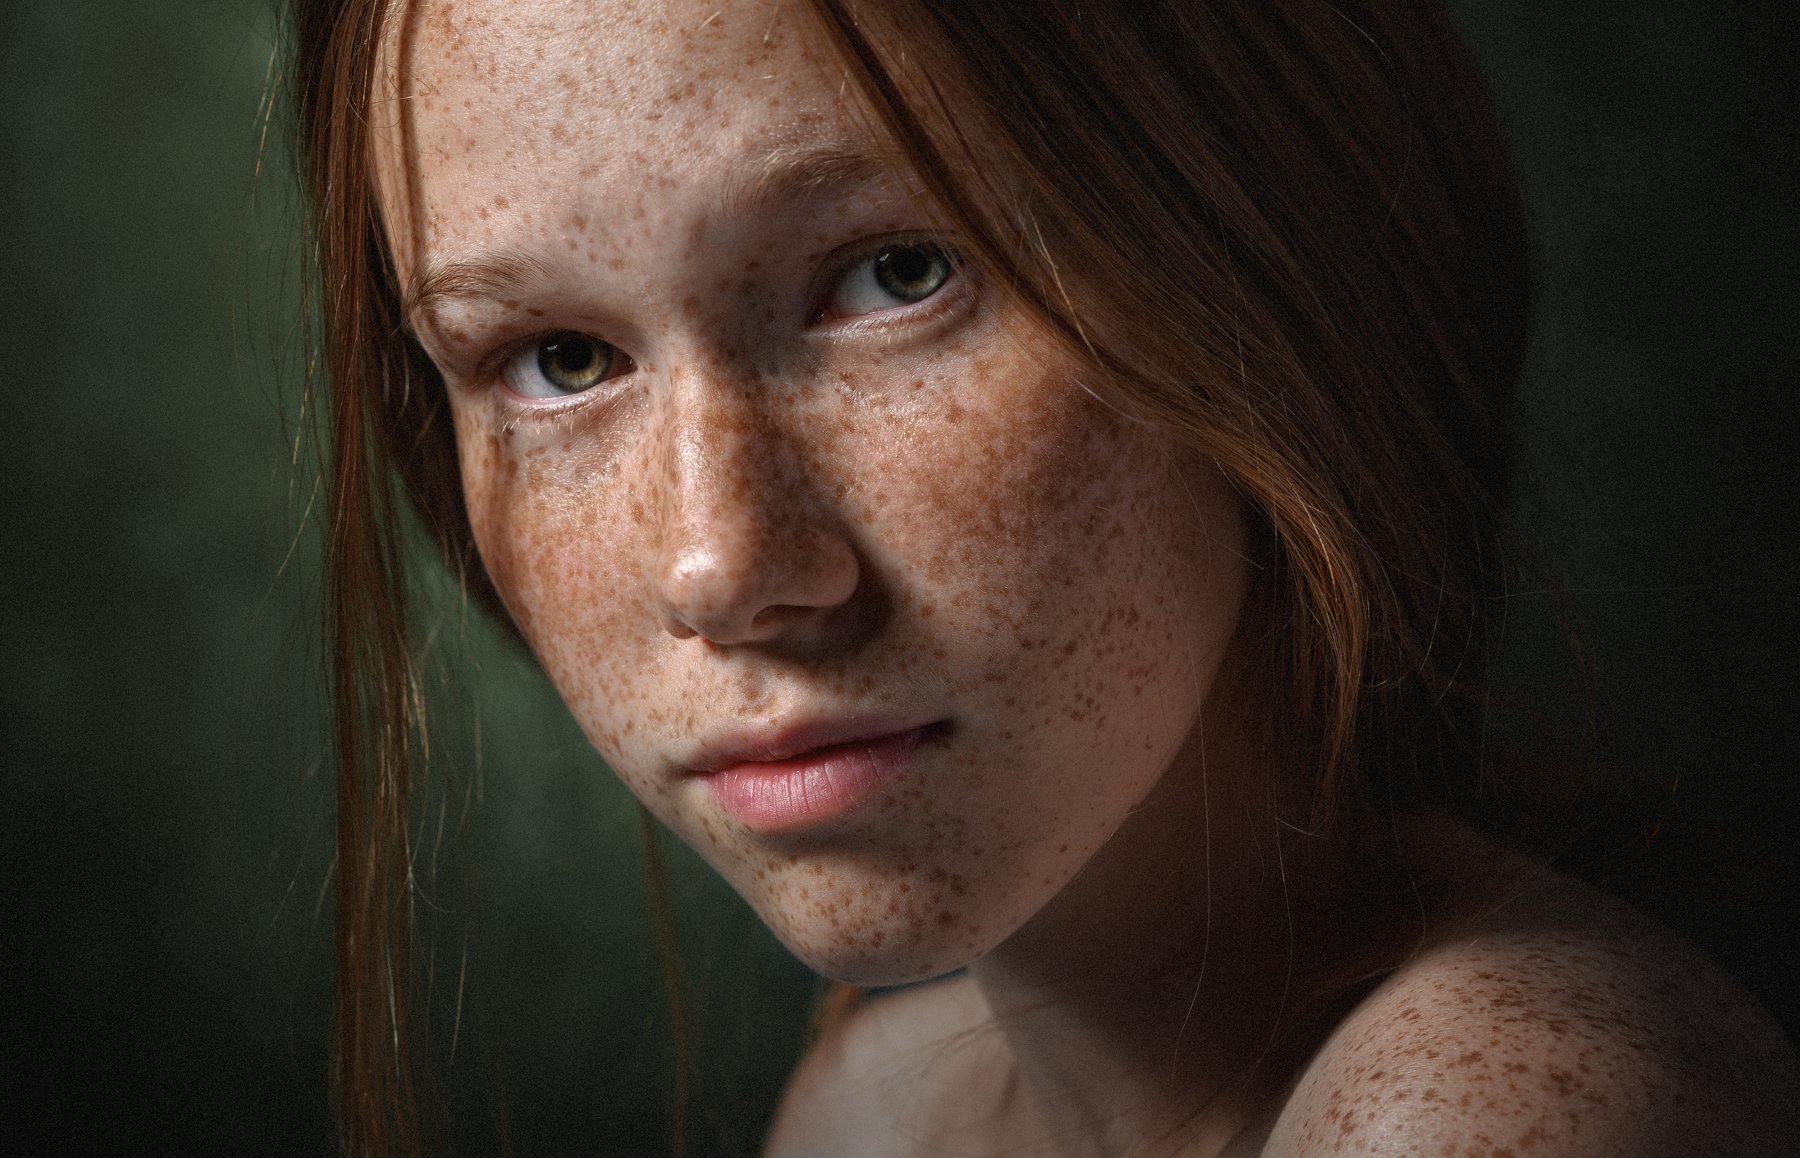 #взгляд #sight #портрет #redhead #portrait #portraitphotography #рыжая #рыжик #веснушки #конопушки, Борис Тменов